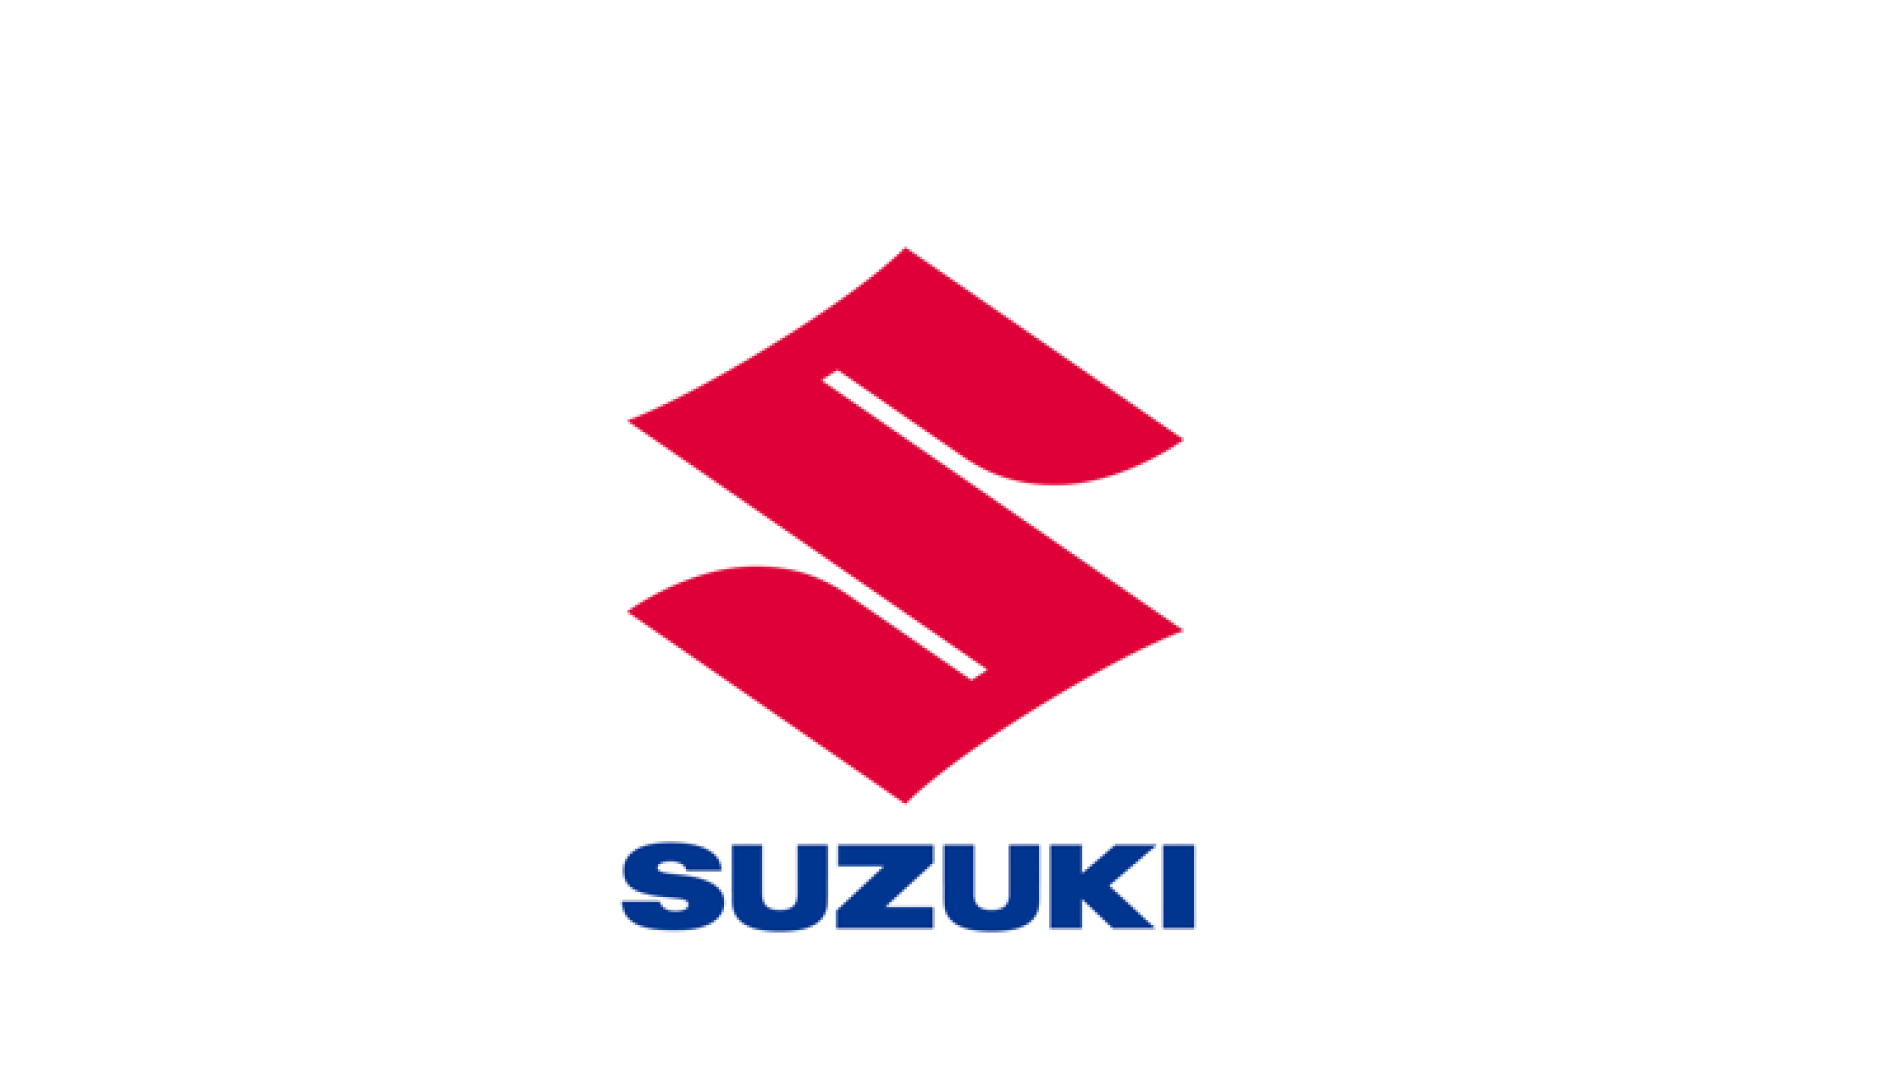 Suzuki fornisce supporto umanitario a favore dell’Ucraina